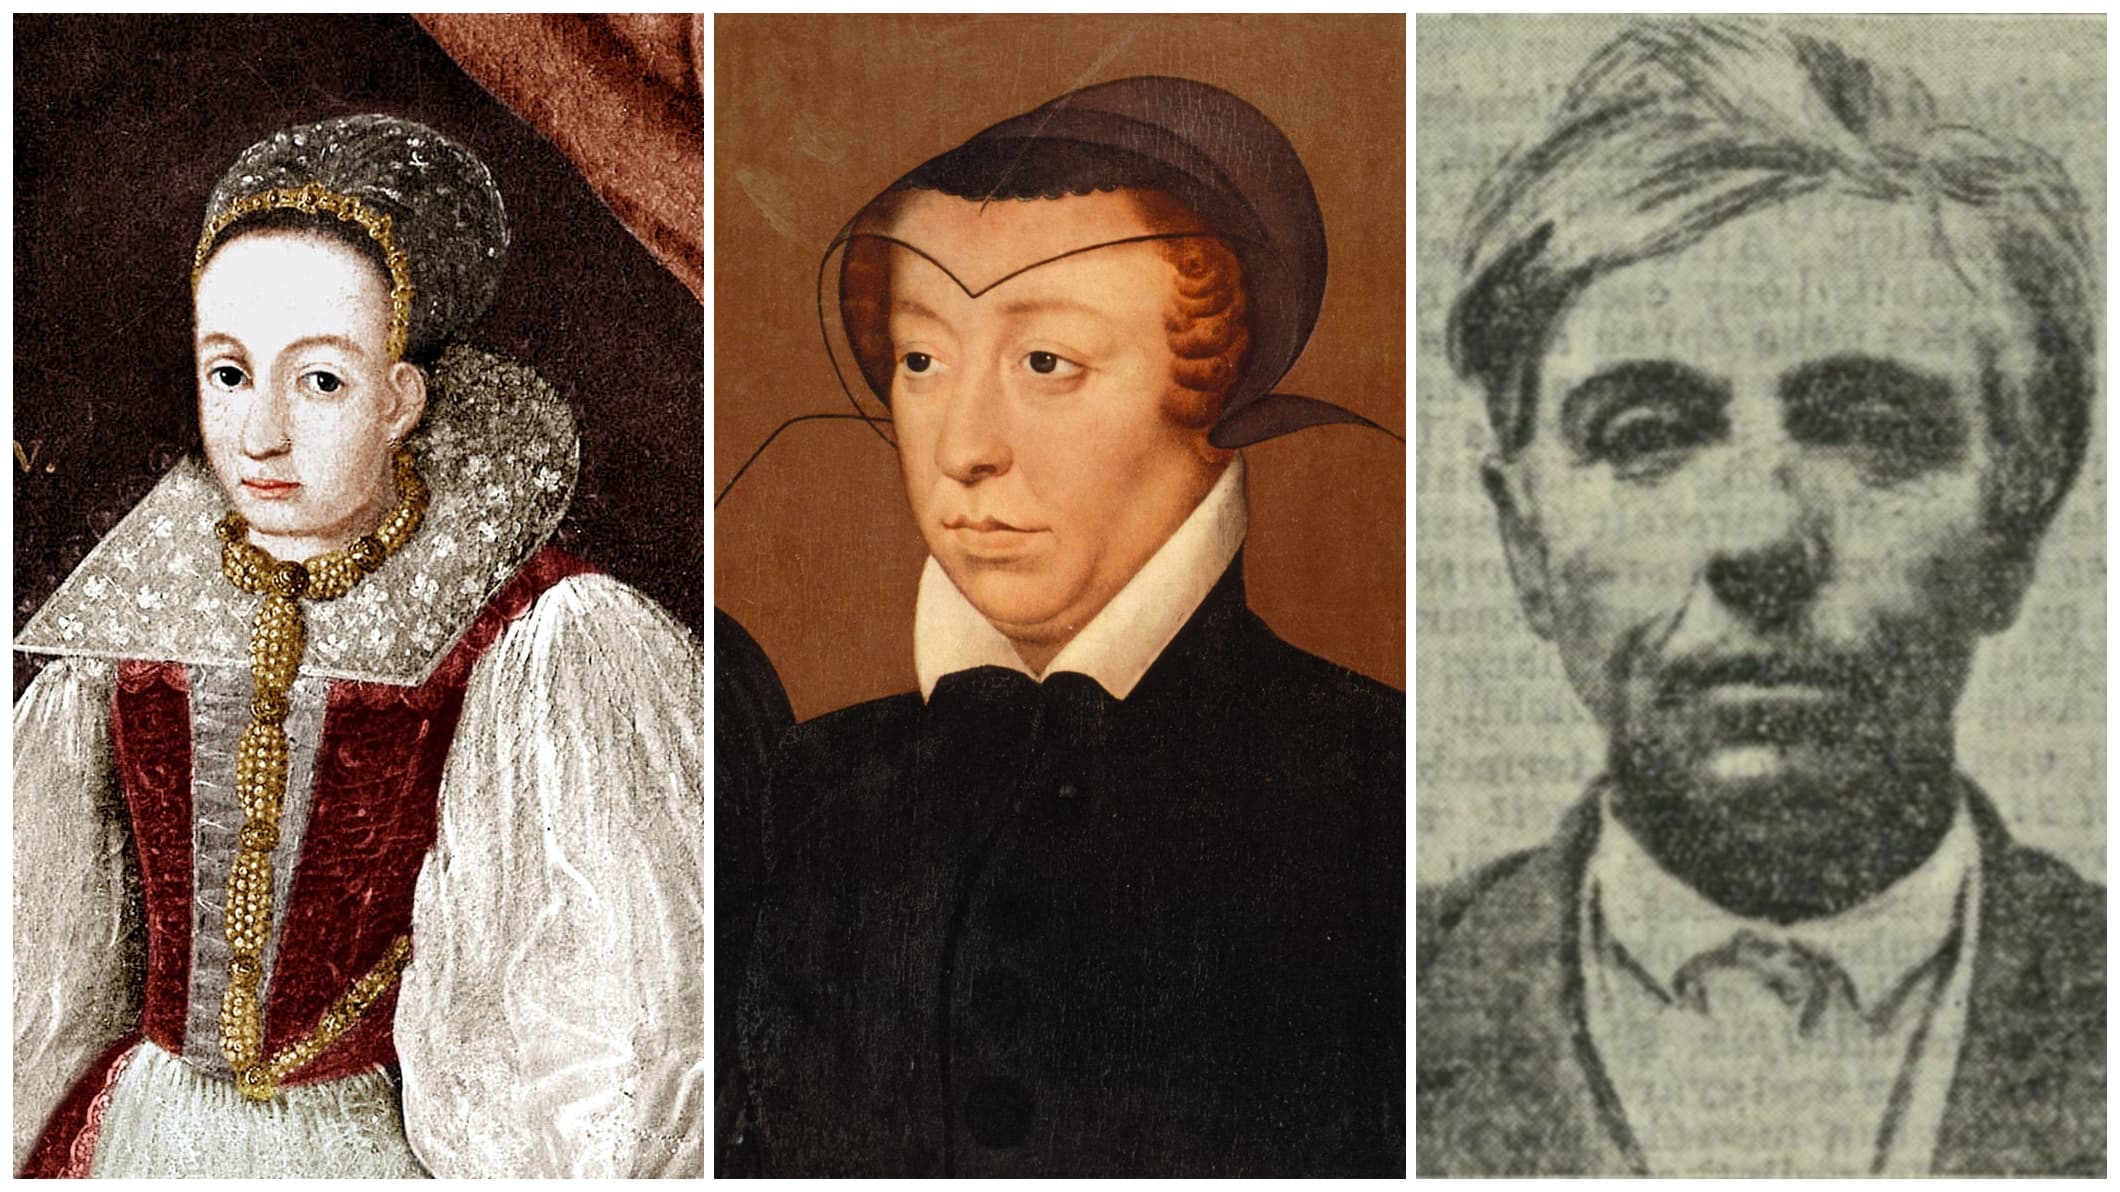 Báthory Erzsébet, Medici Katalin, Pipás Pista – a történelem legkegyetlenebb női karakterei